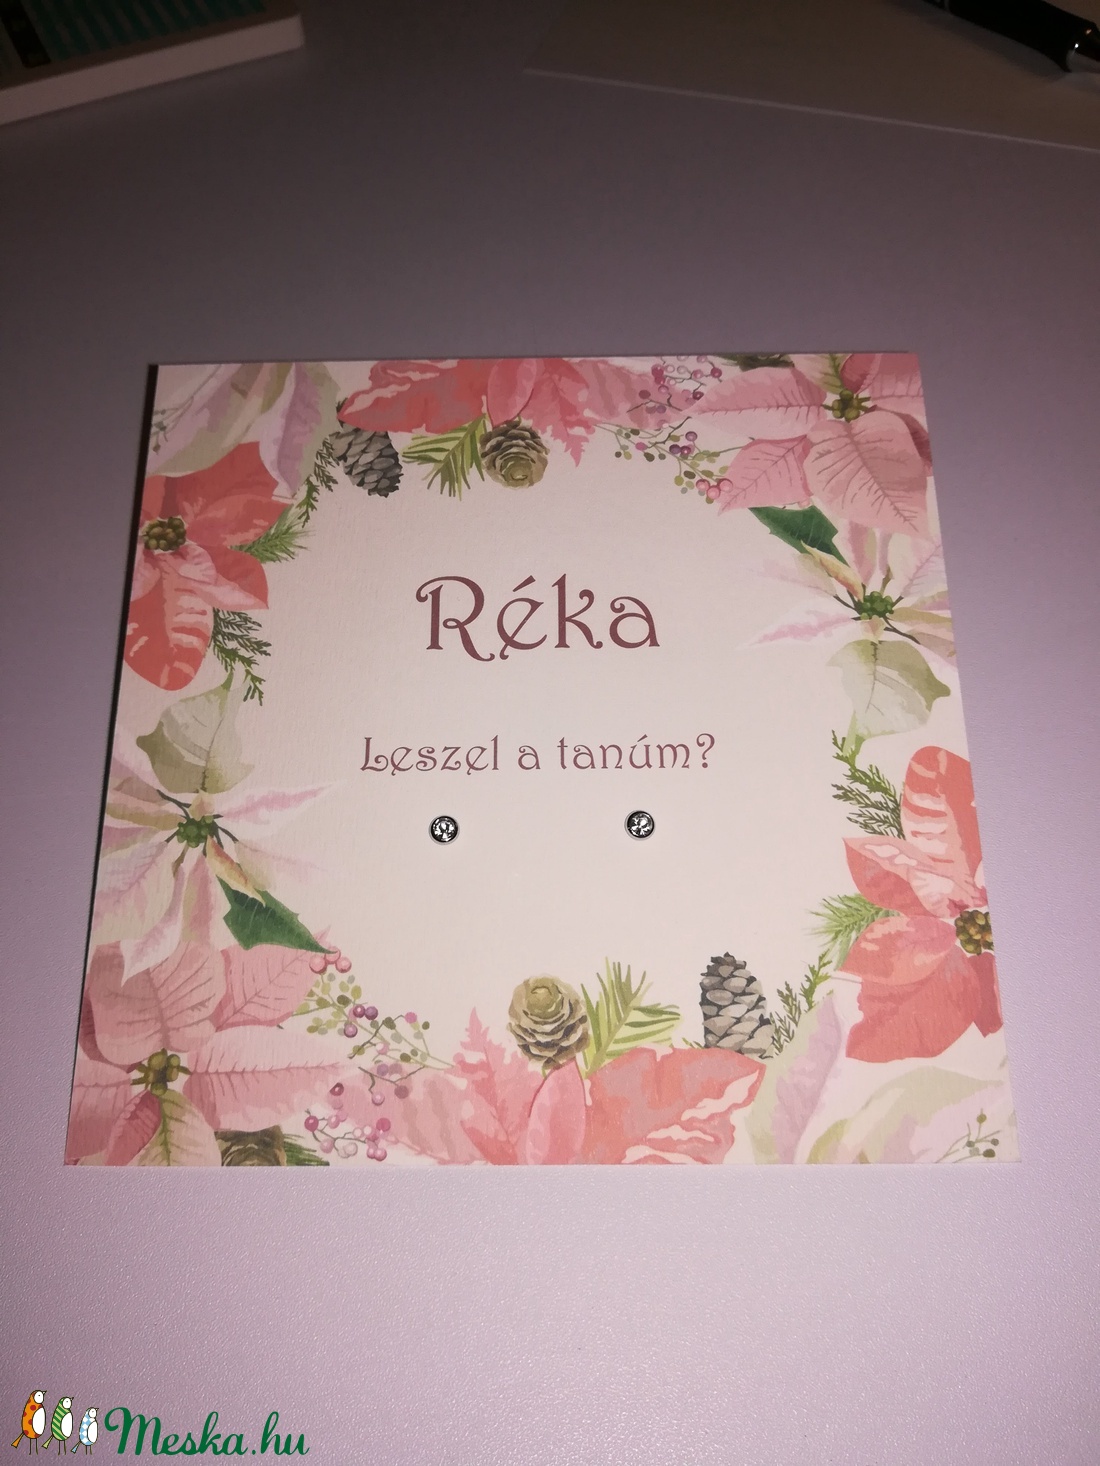 Esküvői tanú / koszorúslány felkérő lap ajándékkal, romantikus, virág motívummal -  - Meska.hu